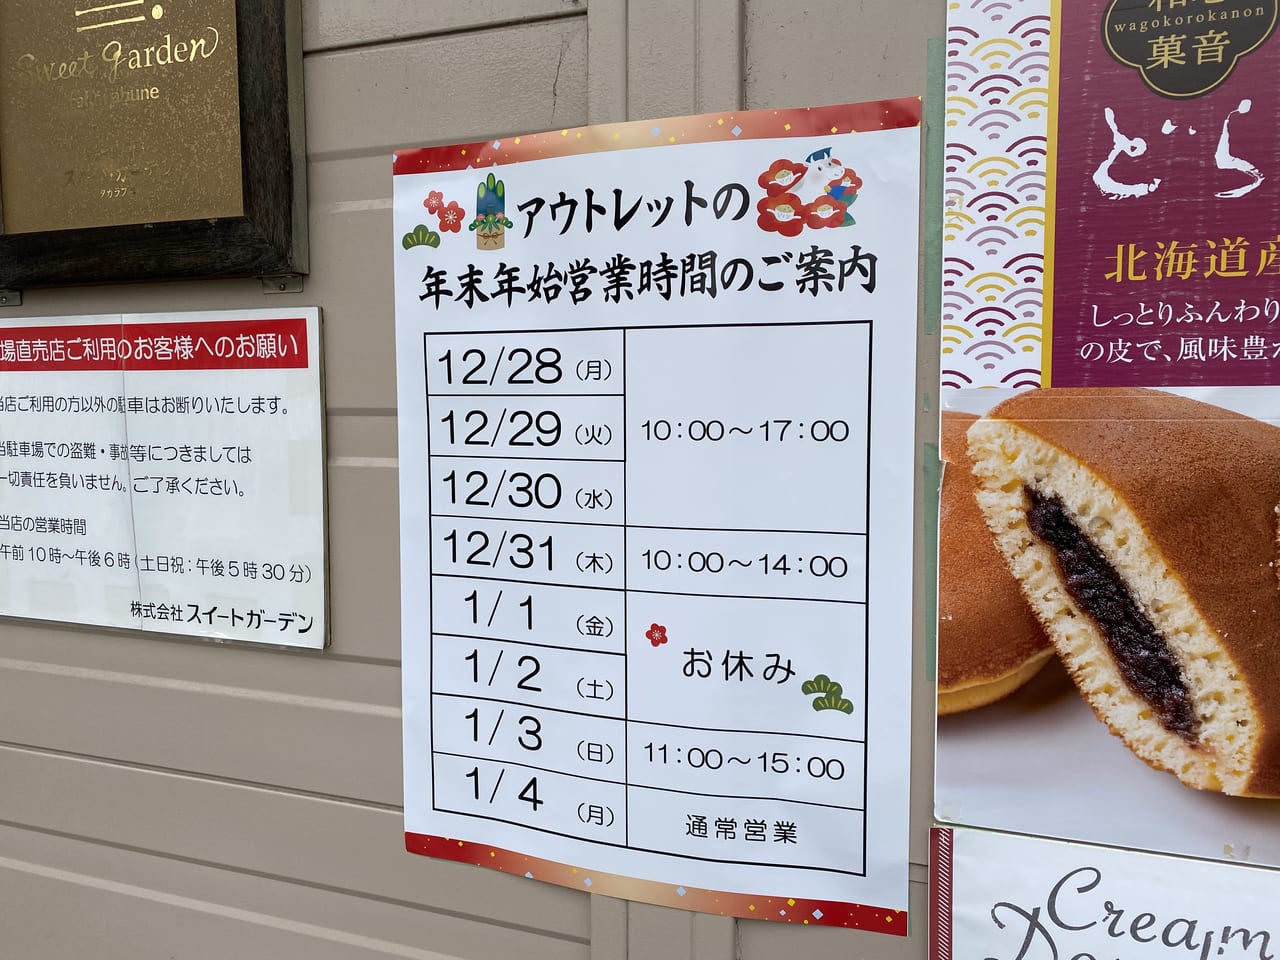 神戸市西区 工場直売 お菓子のアウトレット スイートガーデン神戸工場直売店 に年末年始の営業時間のお知らせが貼られていました 号外net 神戸市西区